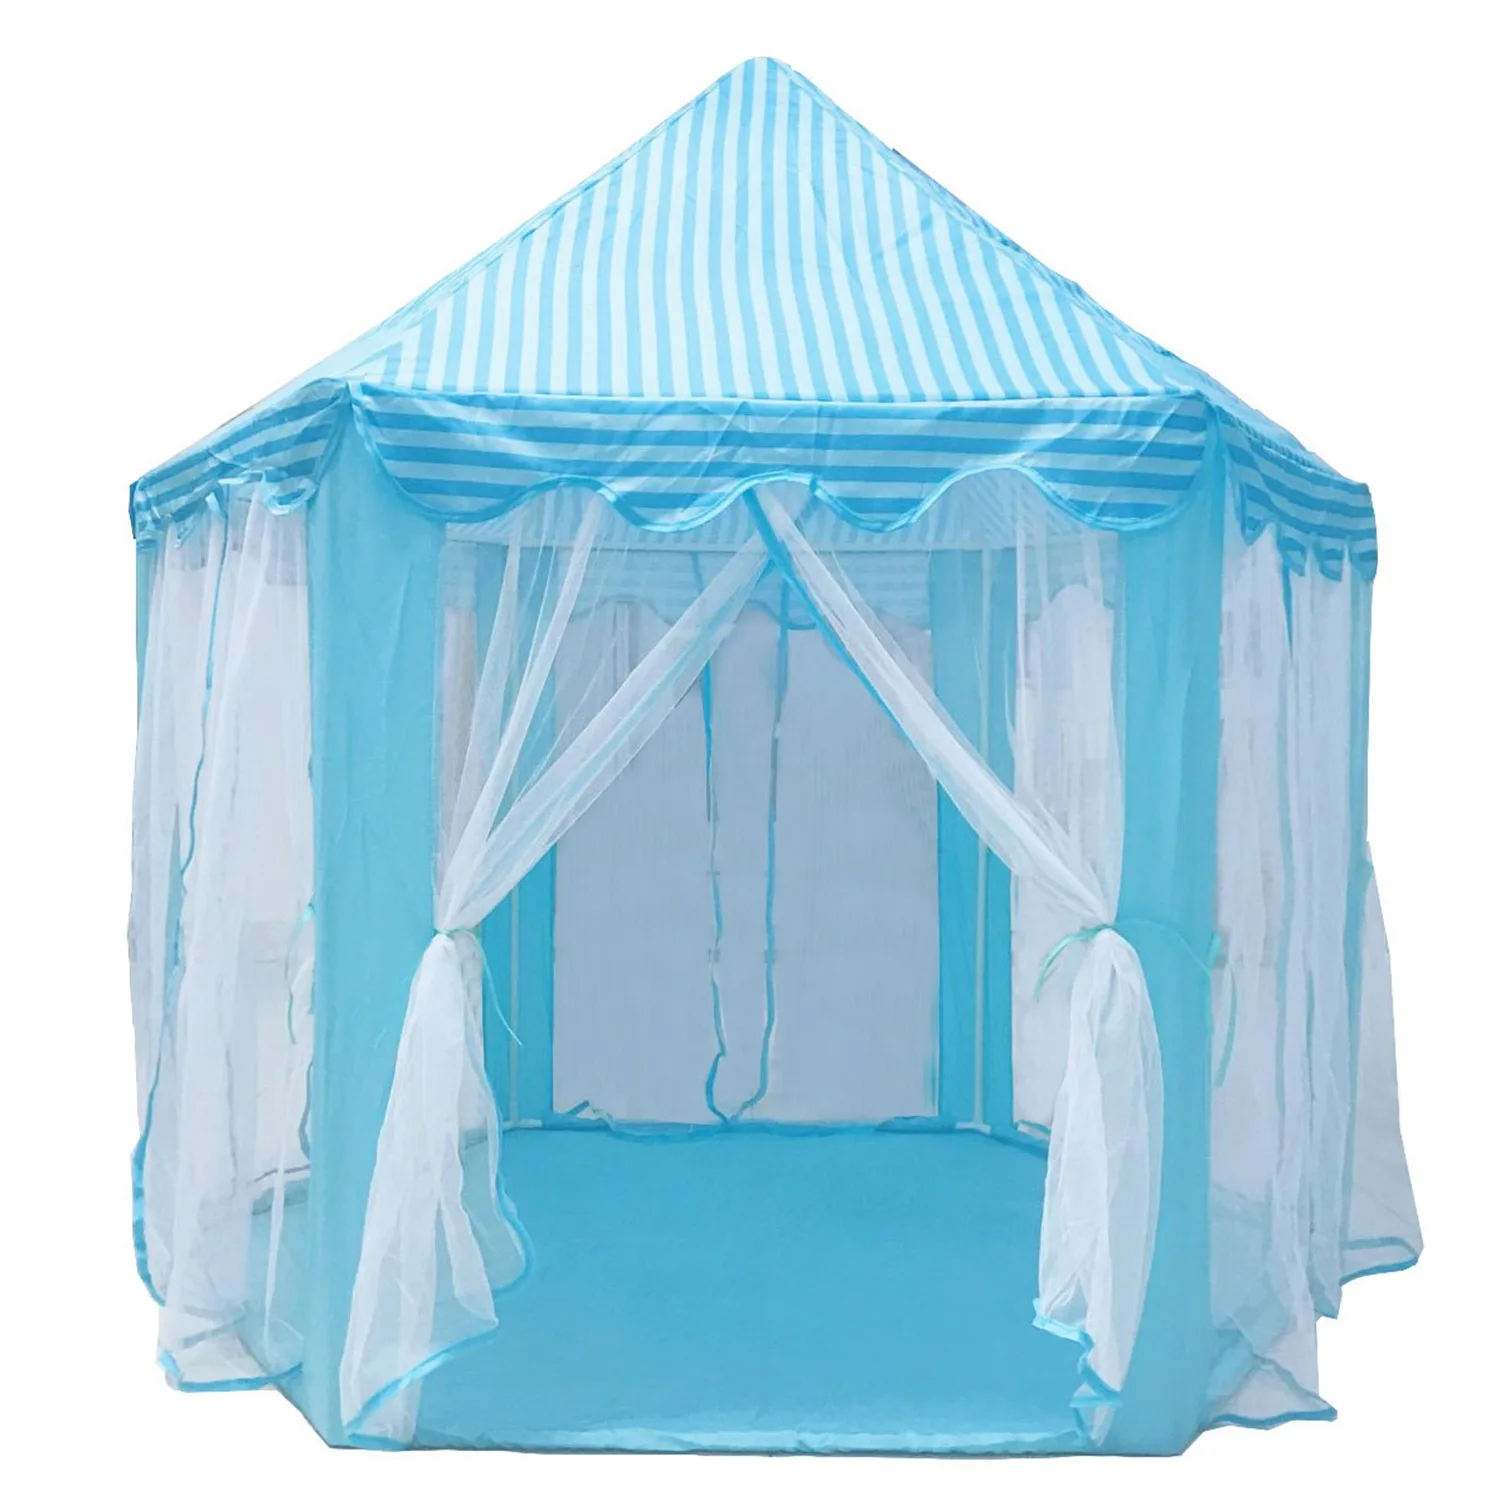 Играть Сказочный Дом Крытый и открытый дети играть палатка шестиугольник Принцесса замок игровой домик для девочек Забавный - Цвет: Blue